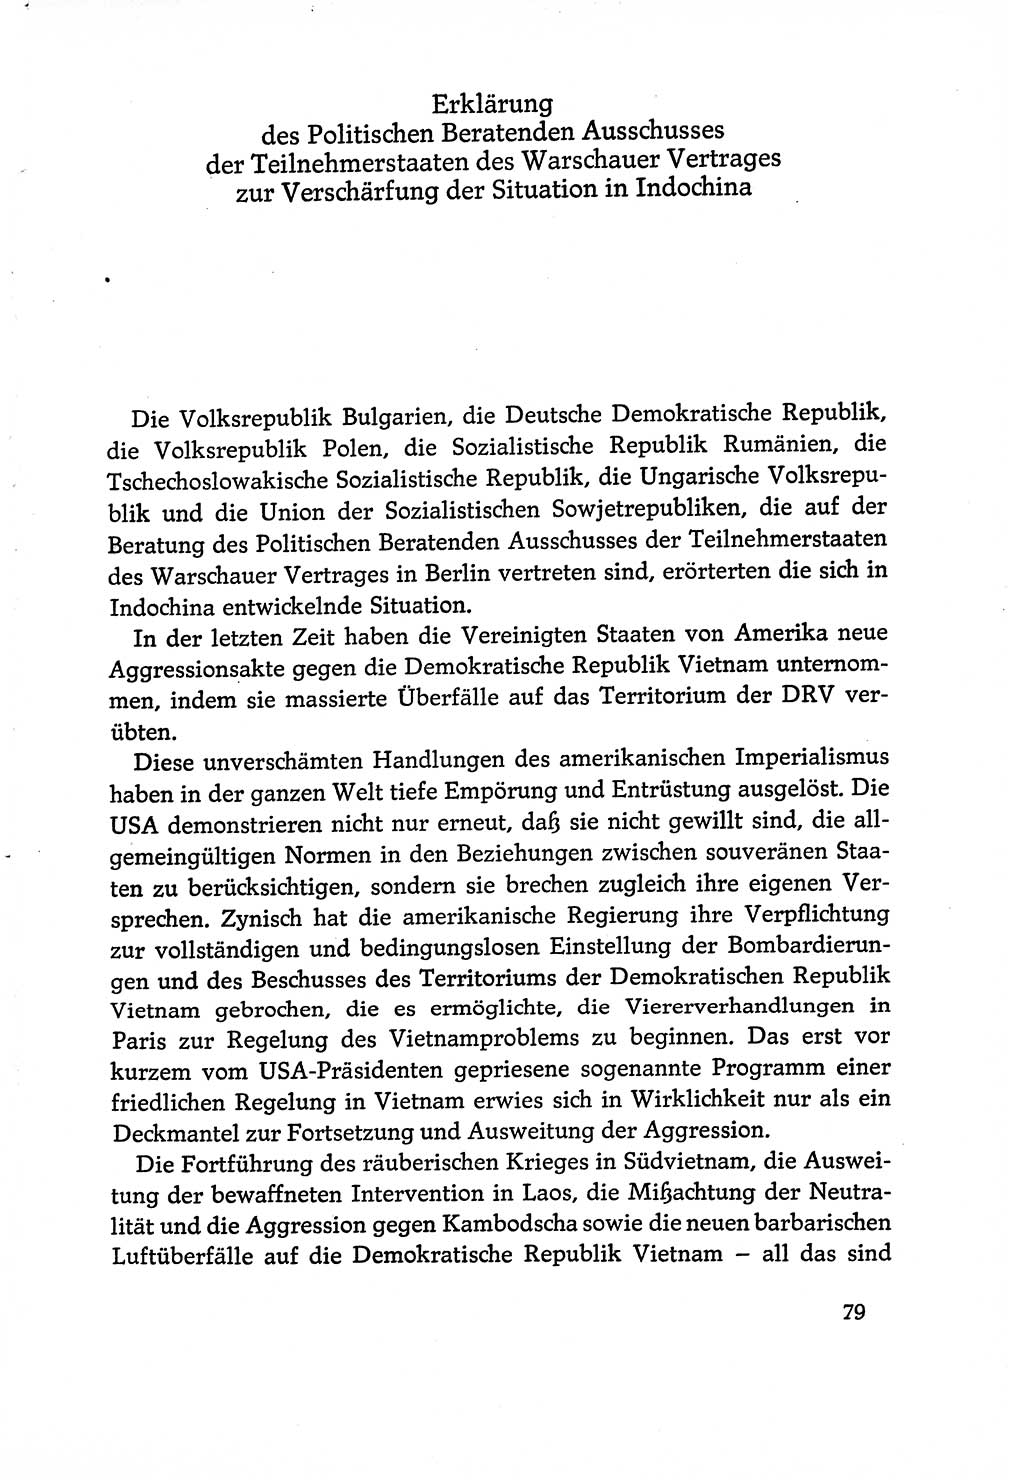 Dokumente der Sozialistischen Einheitspartei Deutschlands (SED) [Deutsche Demokratische Republik (DDR)] 1970-1971, Seite 79 (Dok. SED DDR 1970-1971, S. 79)